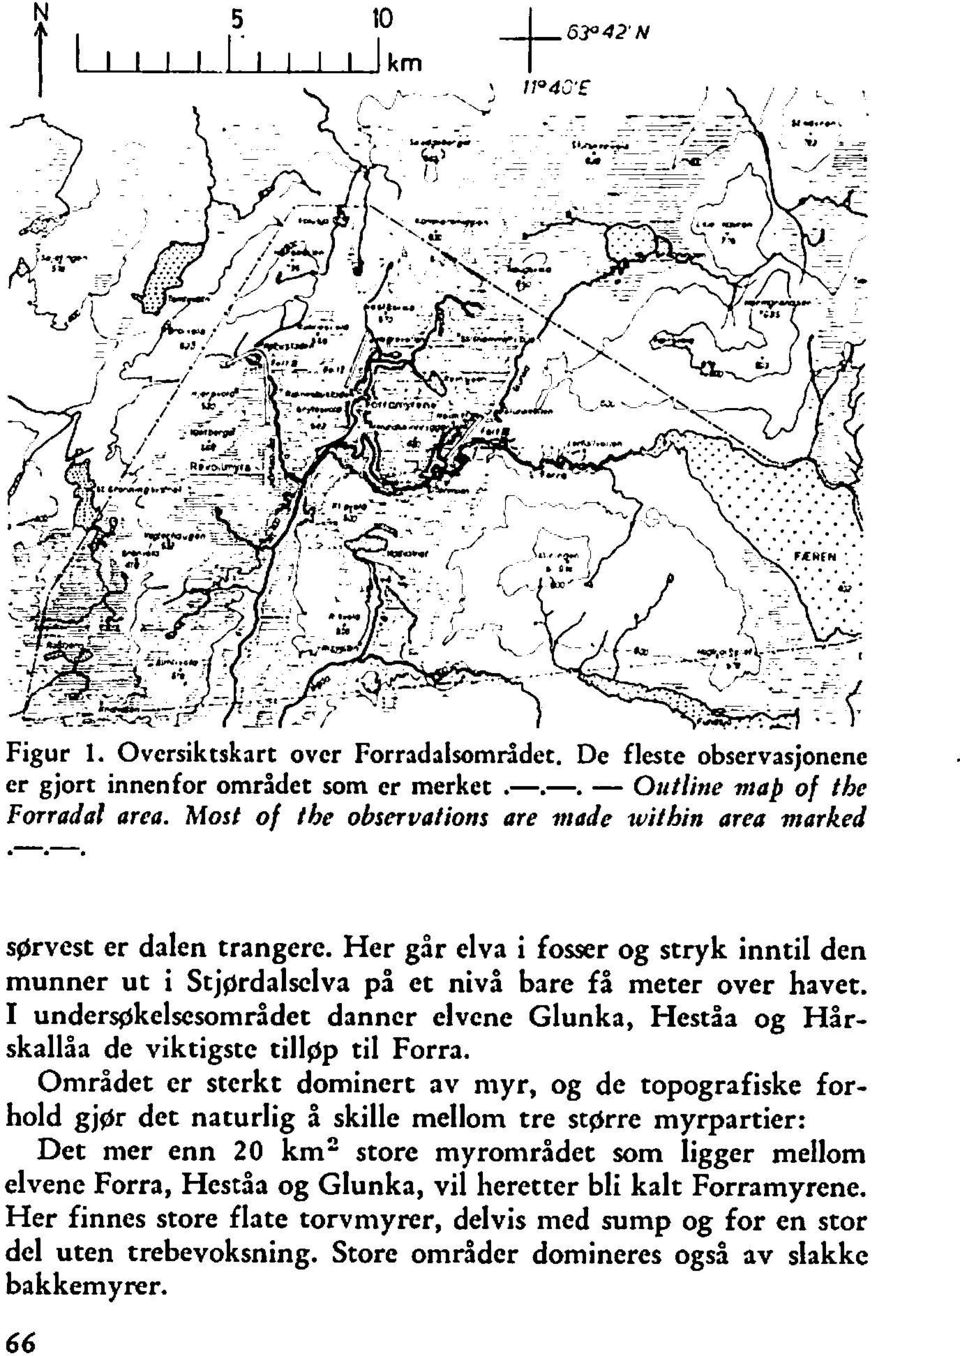 I unders+ikelscsområdet danncr elvene Glunka, Heståa og Hårskallåa de viktigste tillgp til Forra.